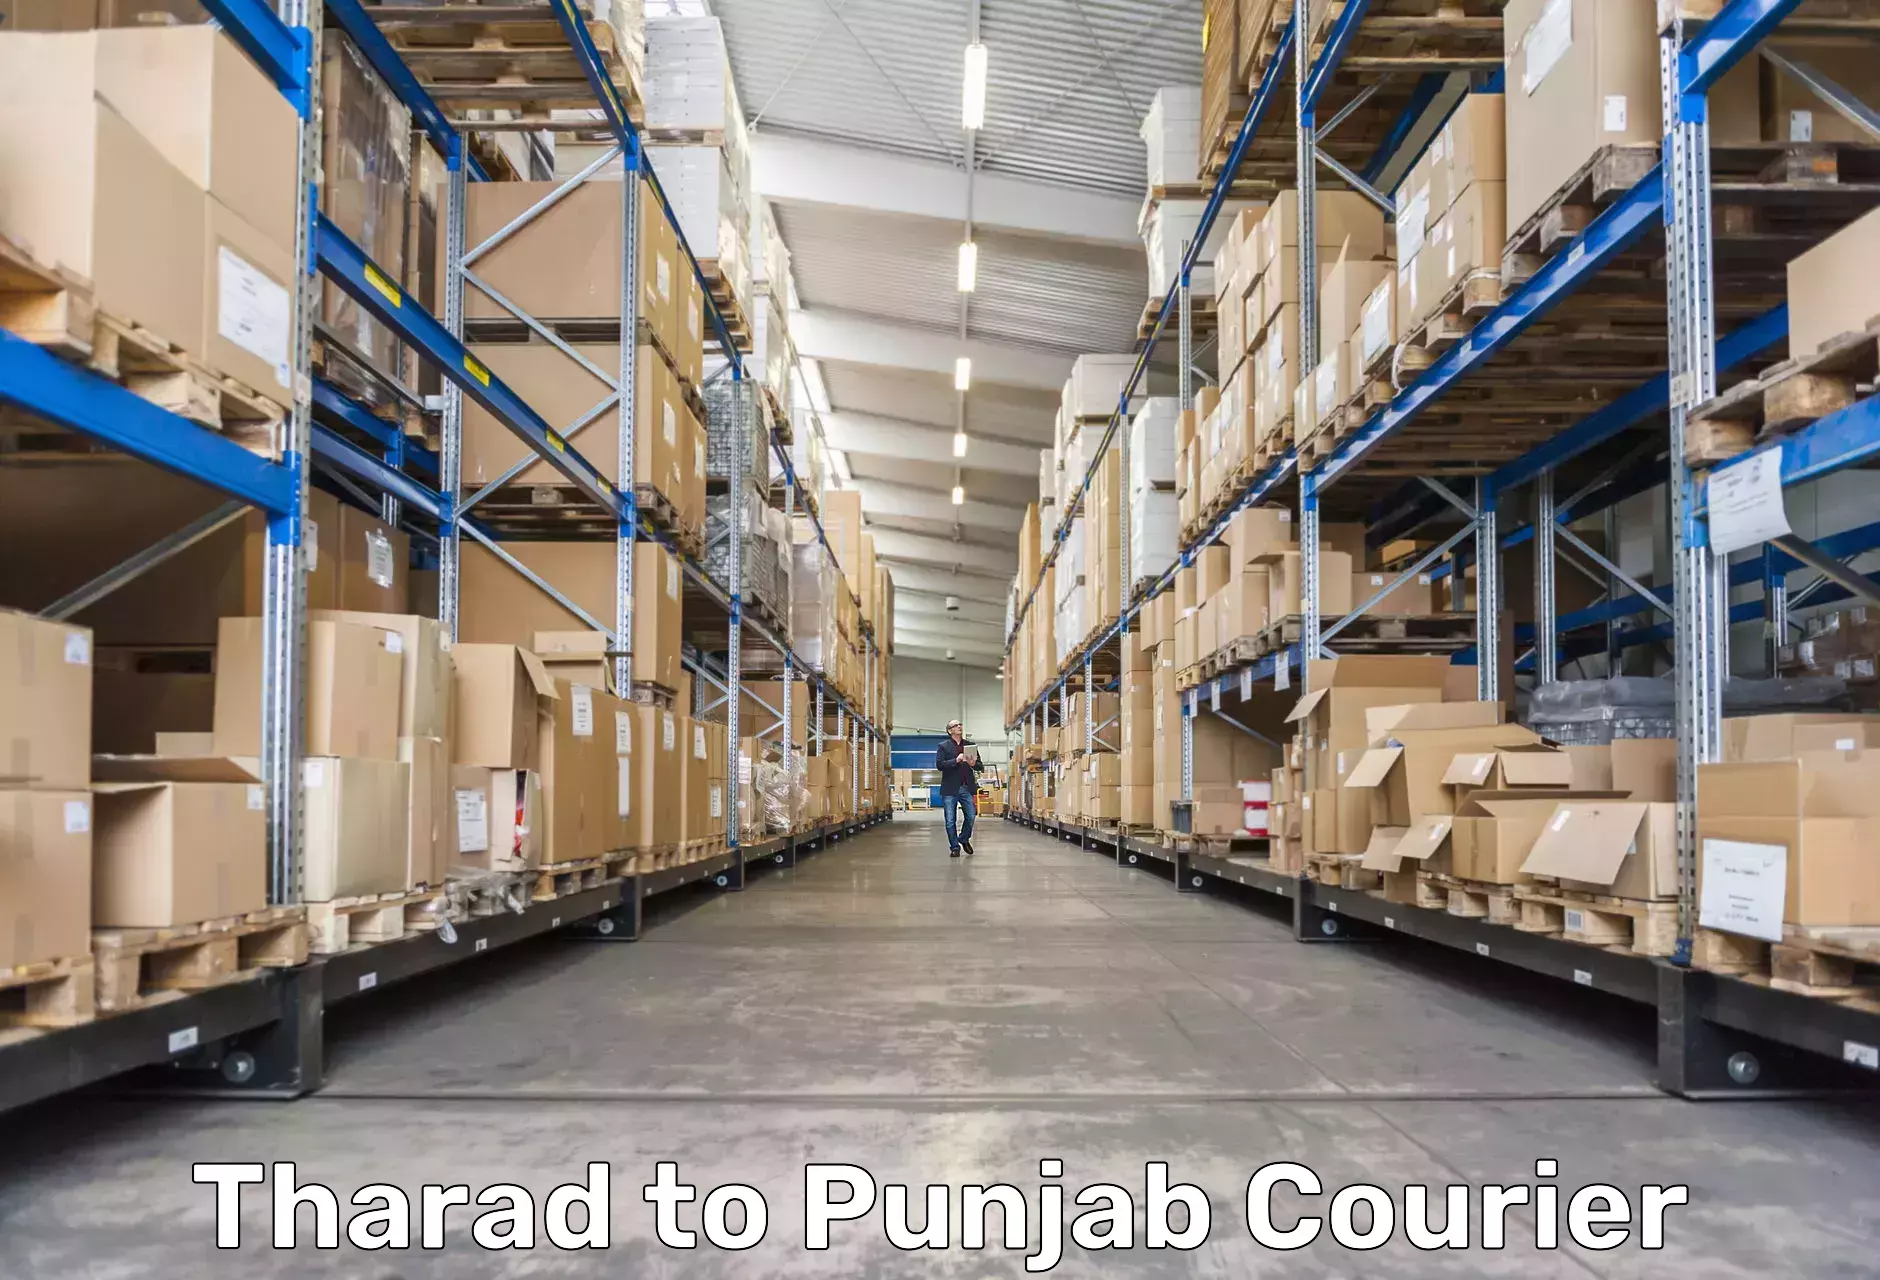 High-capacity shipping options Tharad to Punjab